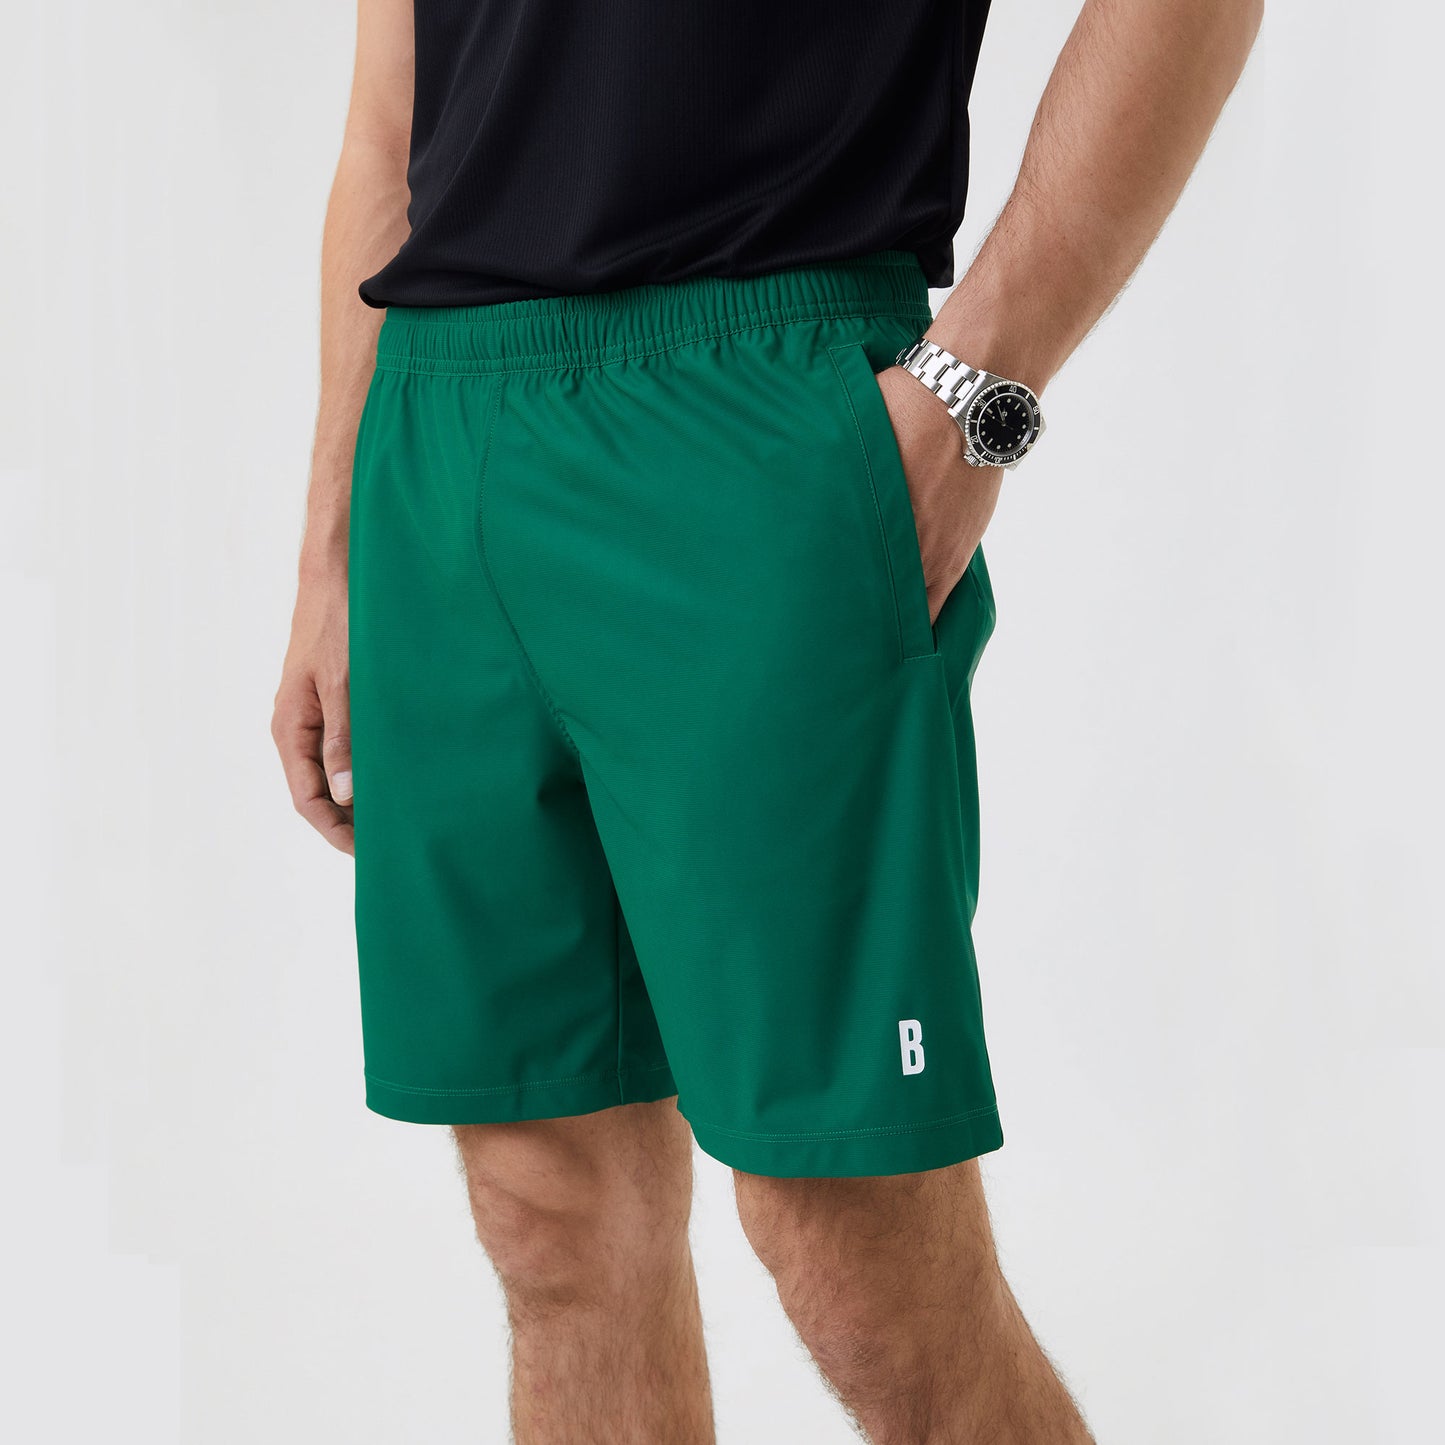 Björn Borg Ace Men's 9-Inch Tennis Shorts Green (3)